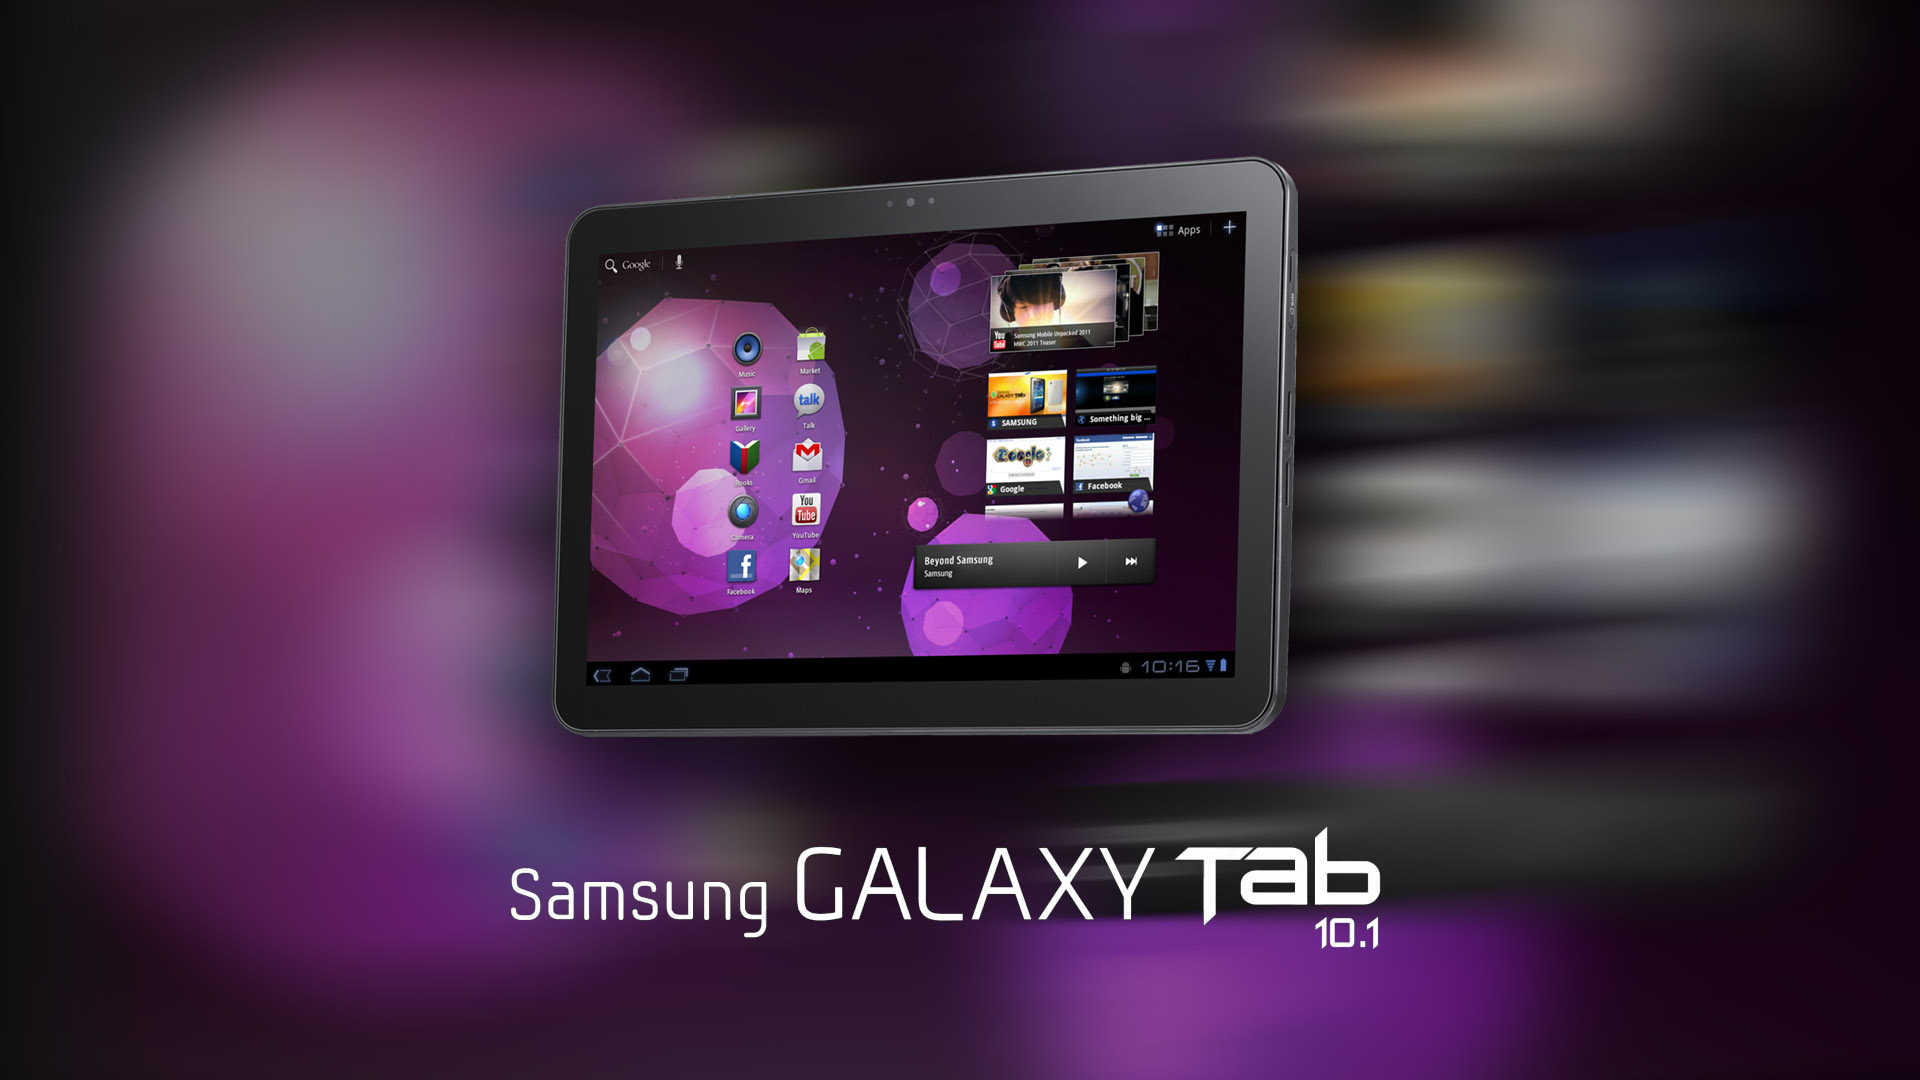 New Samsung Galaxy Tab 101 1920x1080 HD Image Gadgets 1920x1080